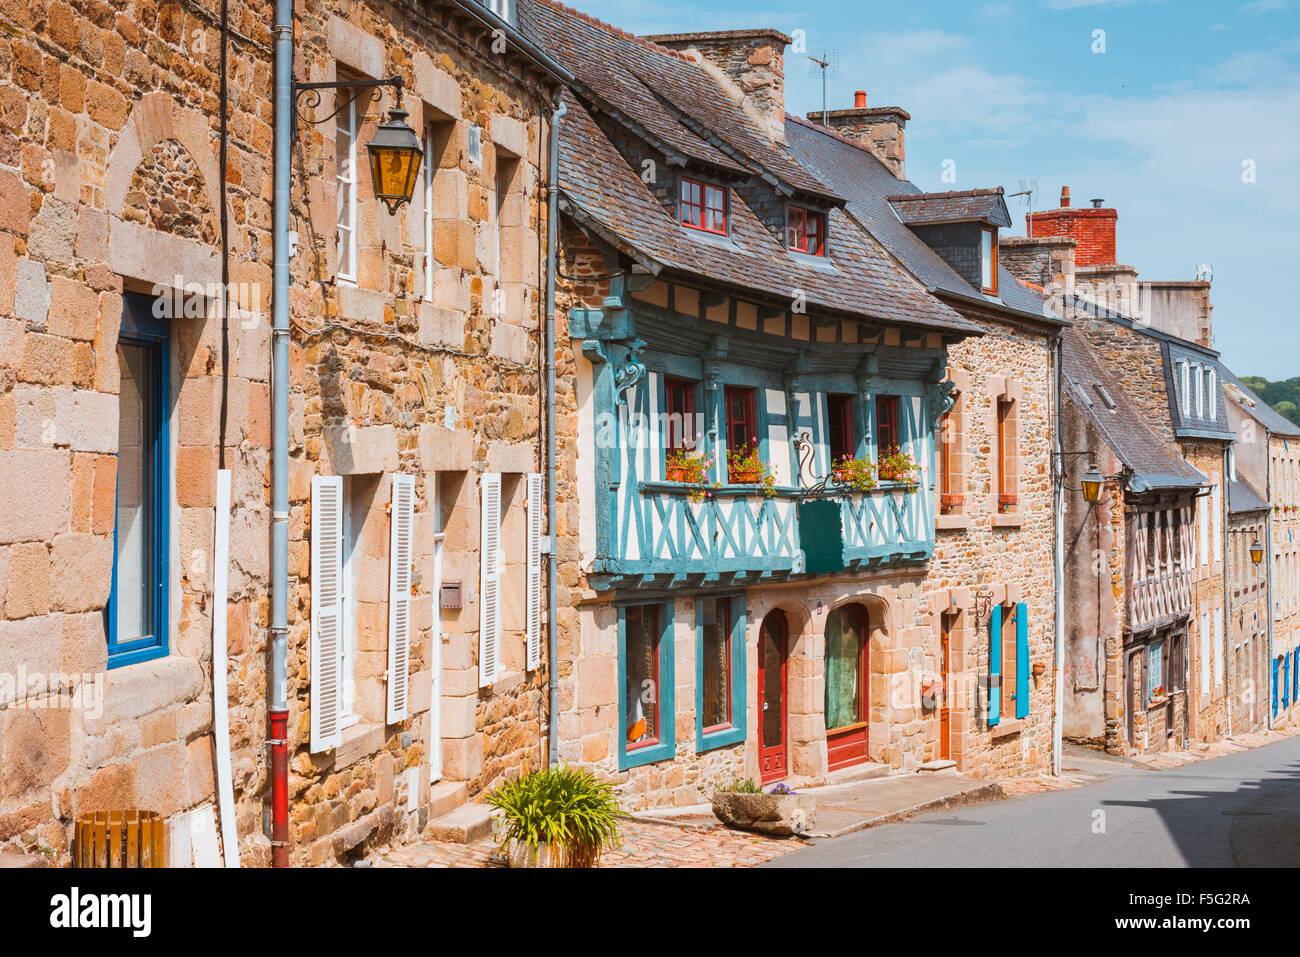 Strada nella vecchia Breton Brittany town Treguier, Francia Foto Stock